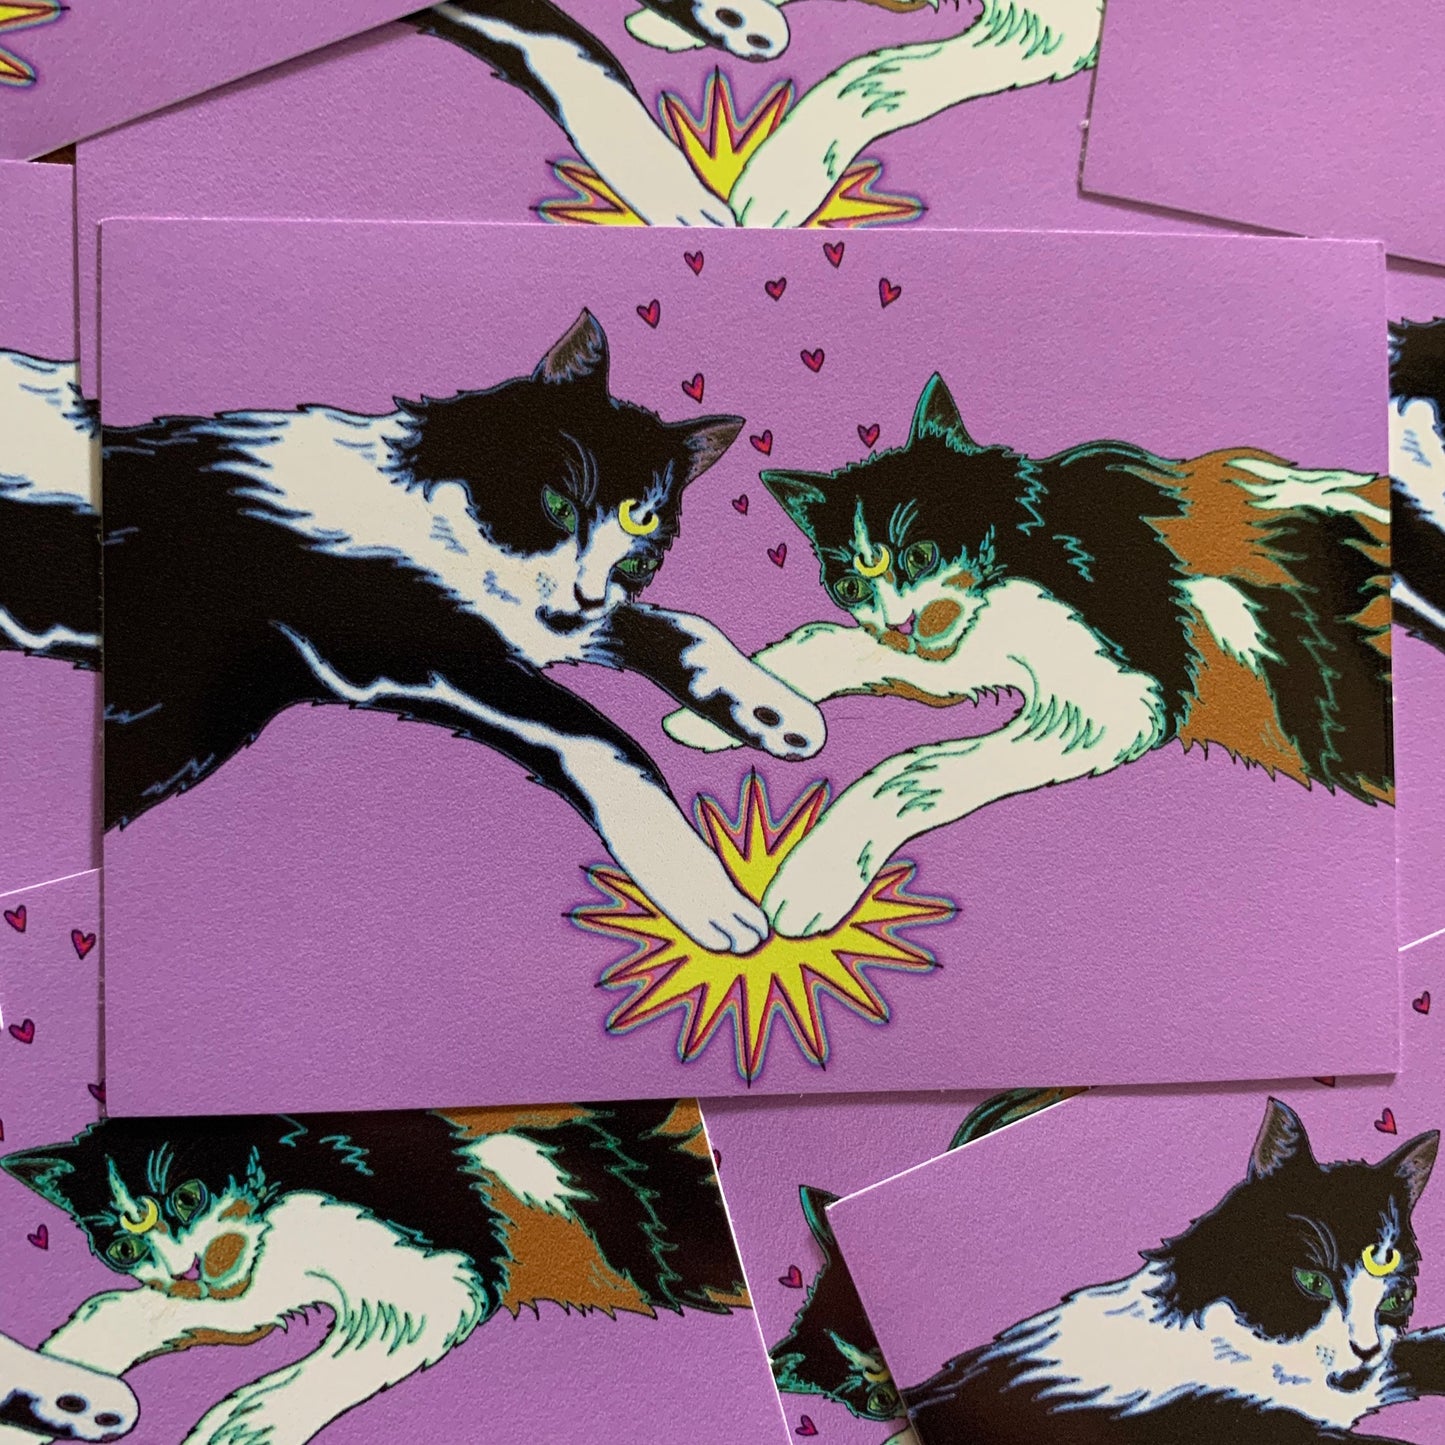 Cat Power variant #2 vinyl sticker